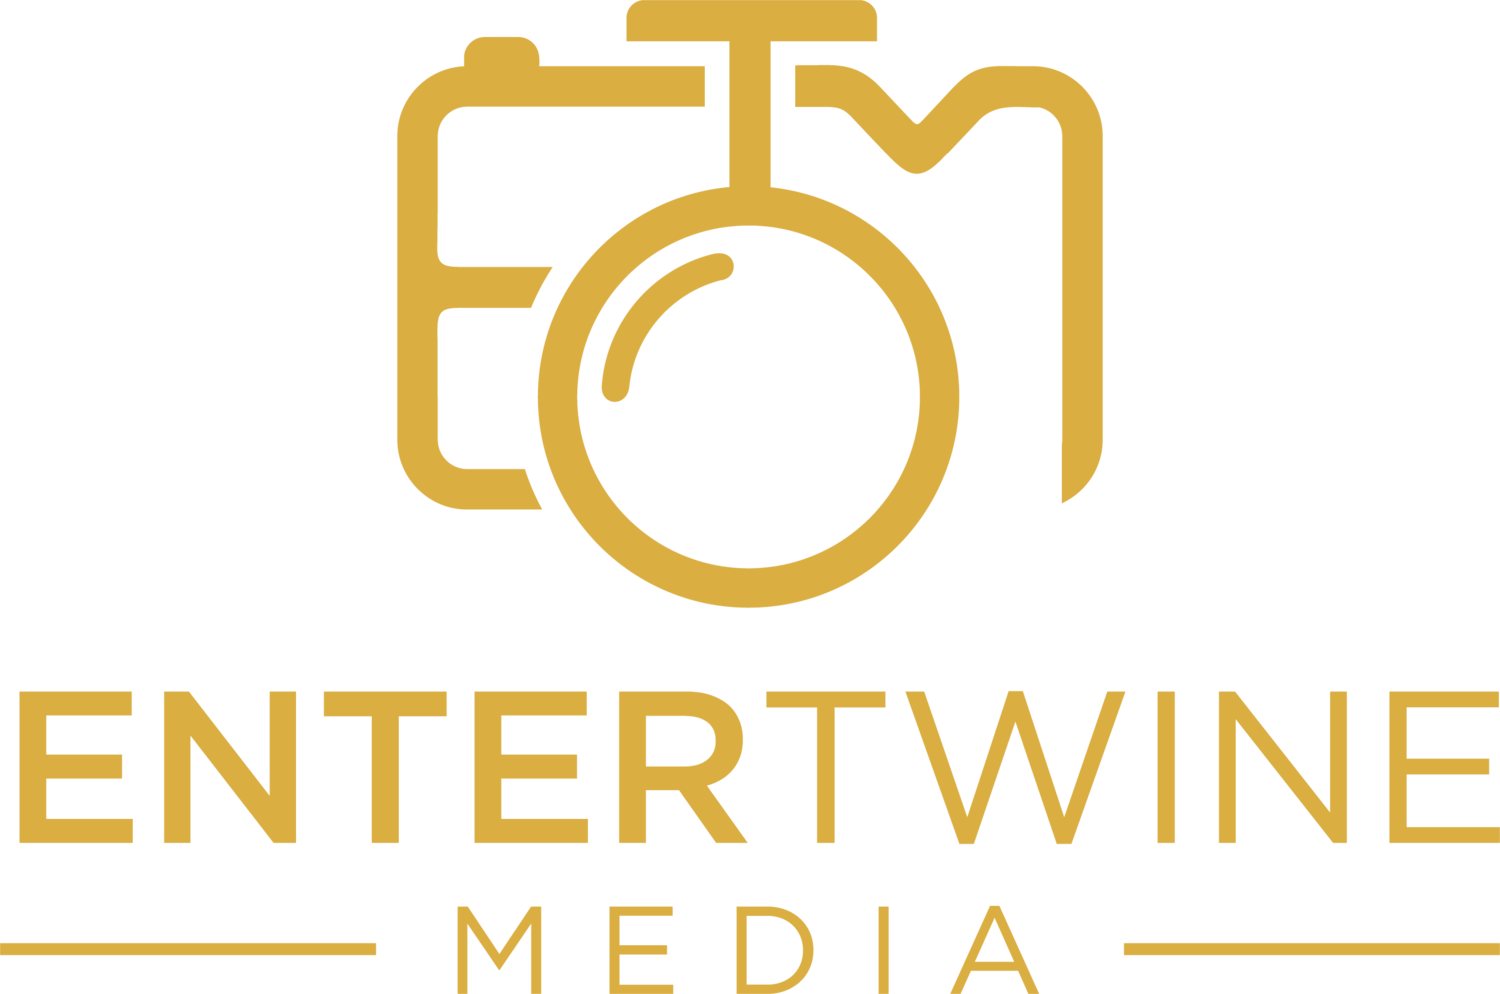 Entertwine Media